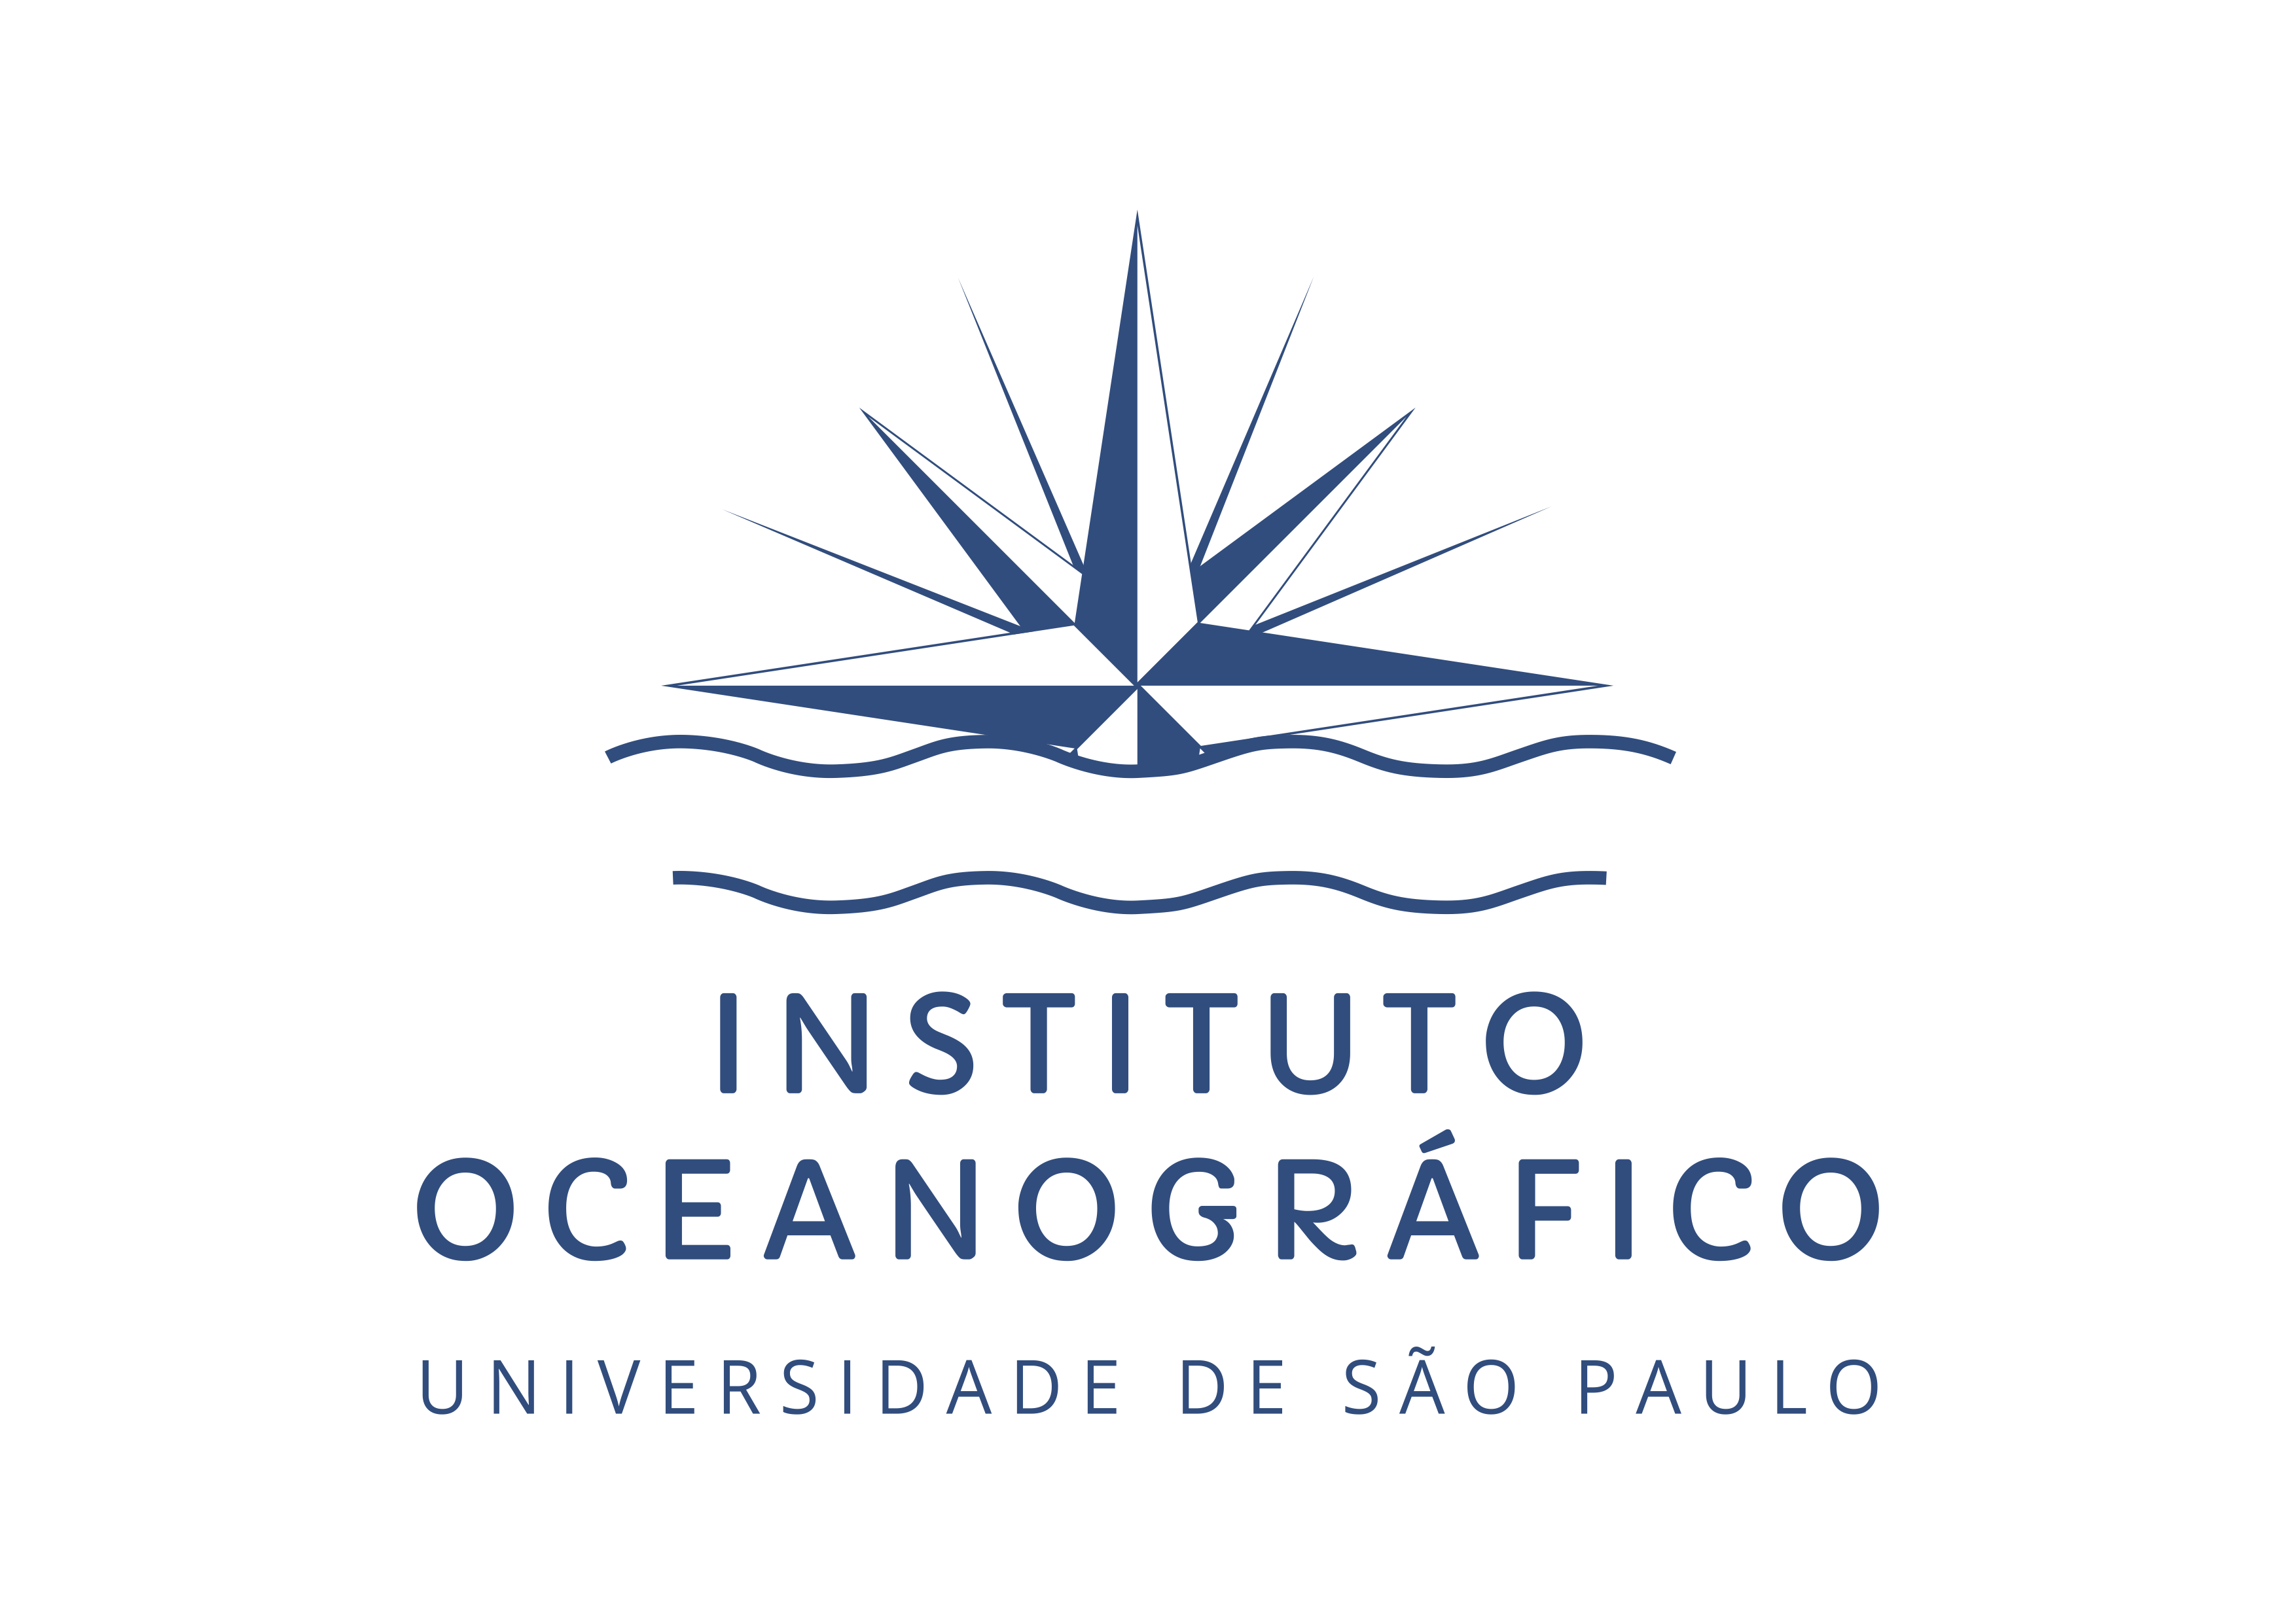 Instituto Oceanográfico da Universidade de São Paulo